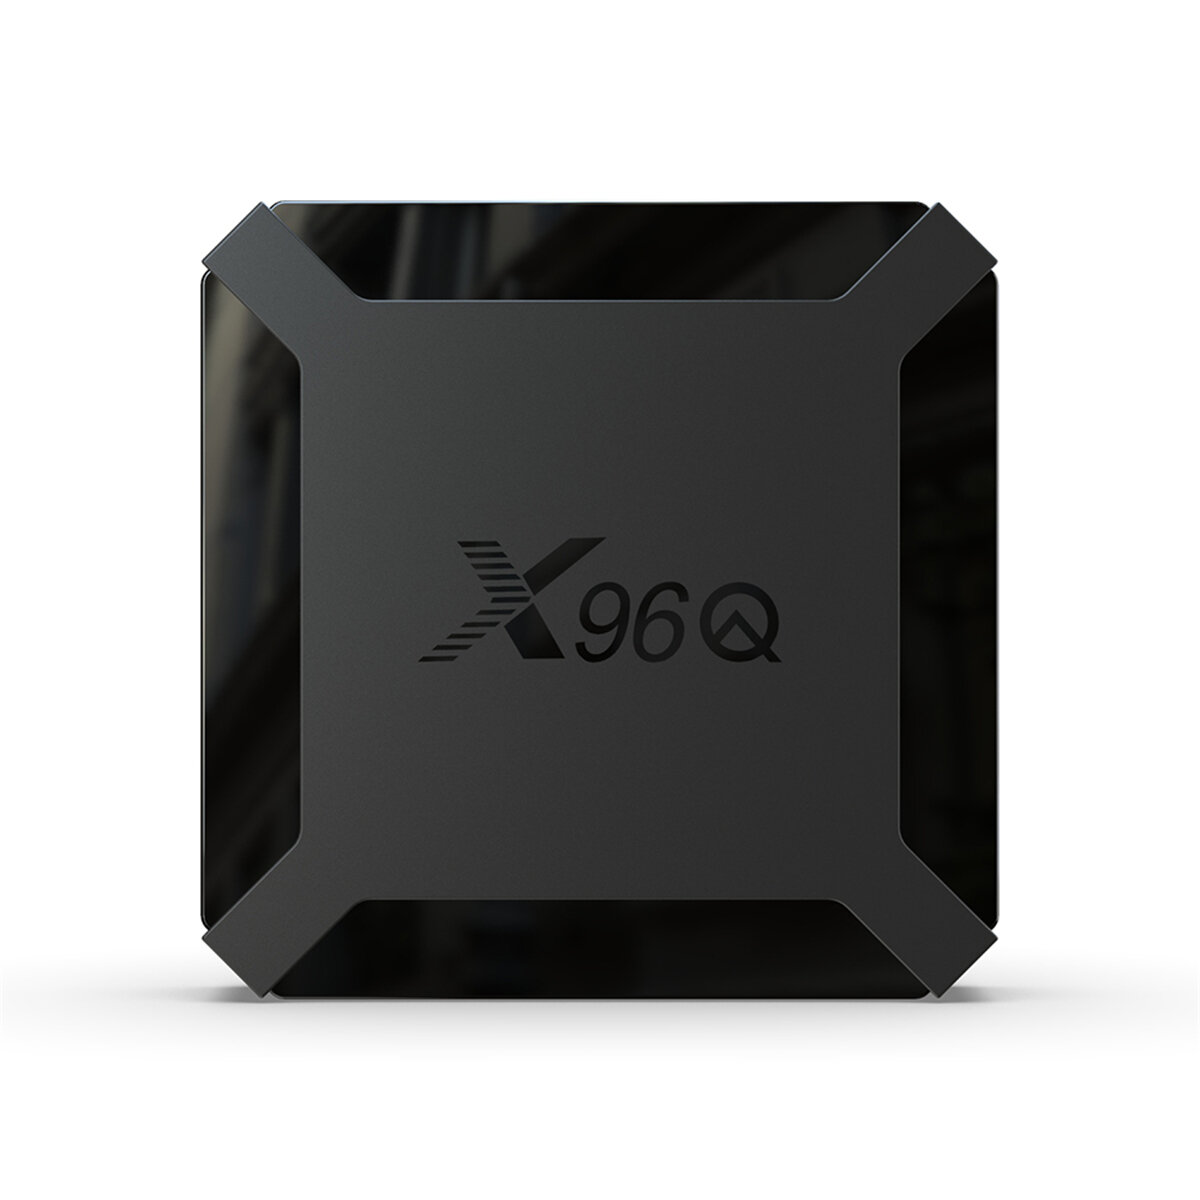 

X96Q Allwinner H313 Quad Core DDR3 1GB RAM eMMC 8GB ROM 2.4G Wifi 4K TV Коробка H.265 VP9 4K @ 60fps